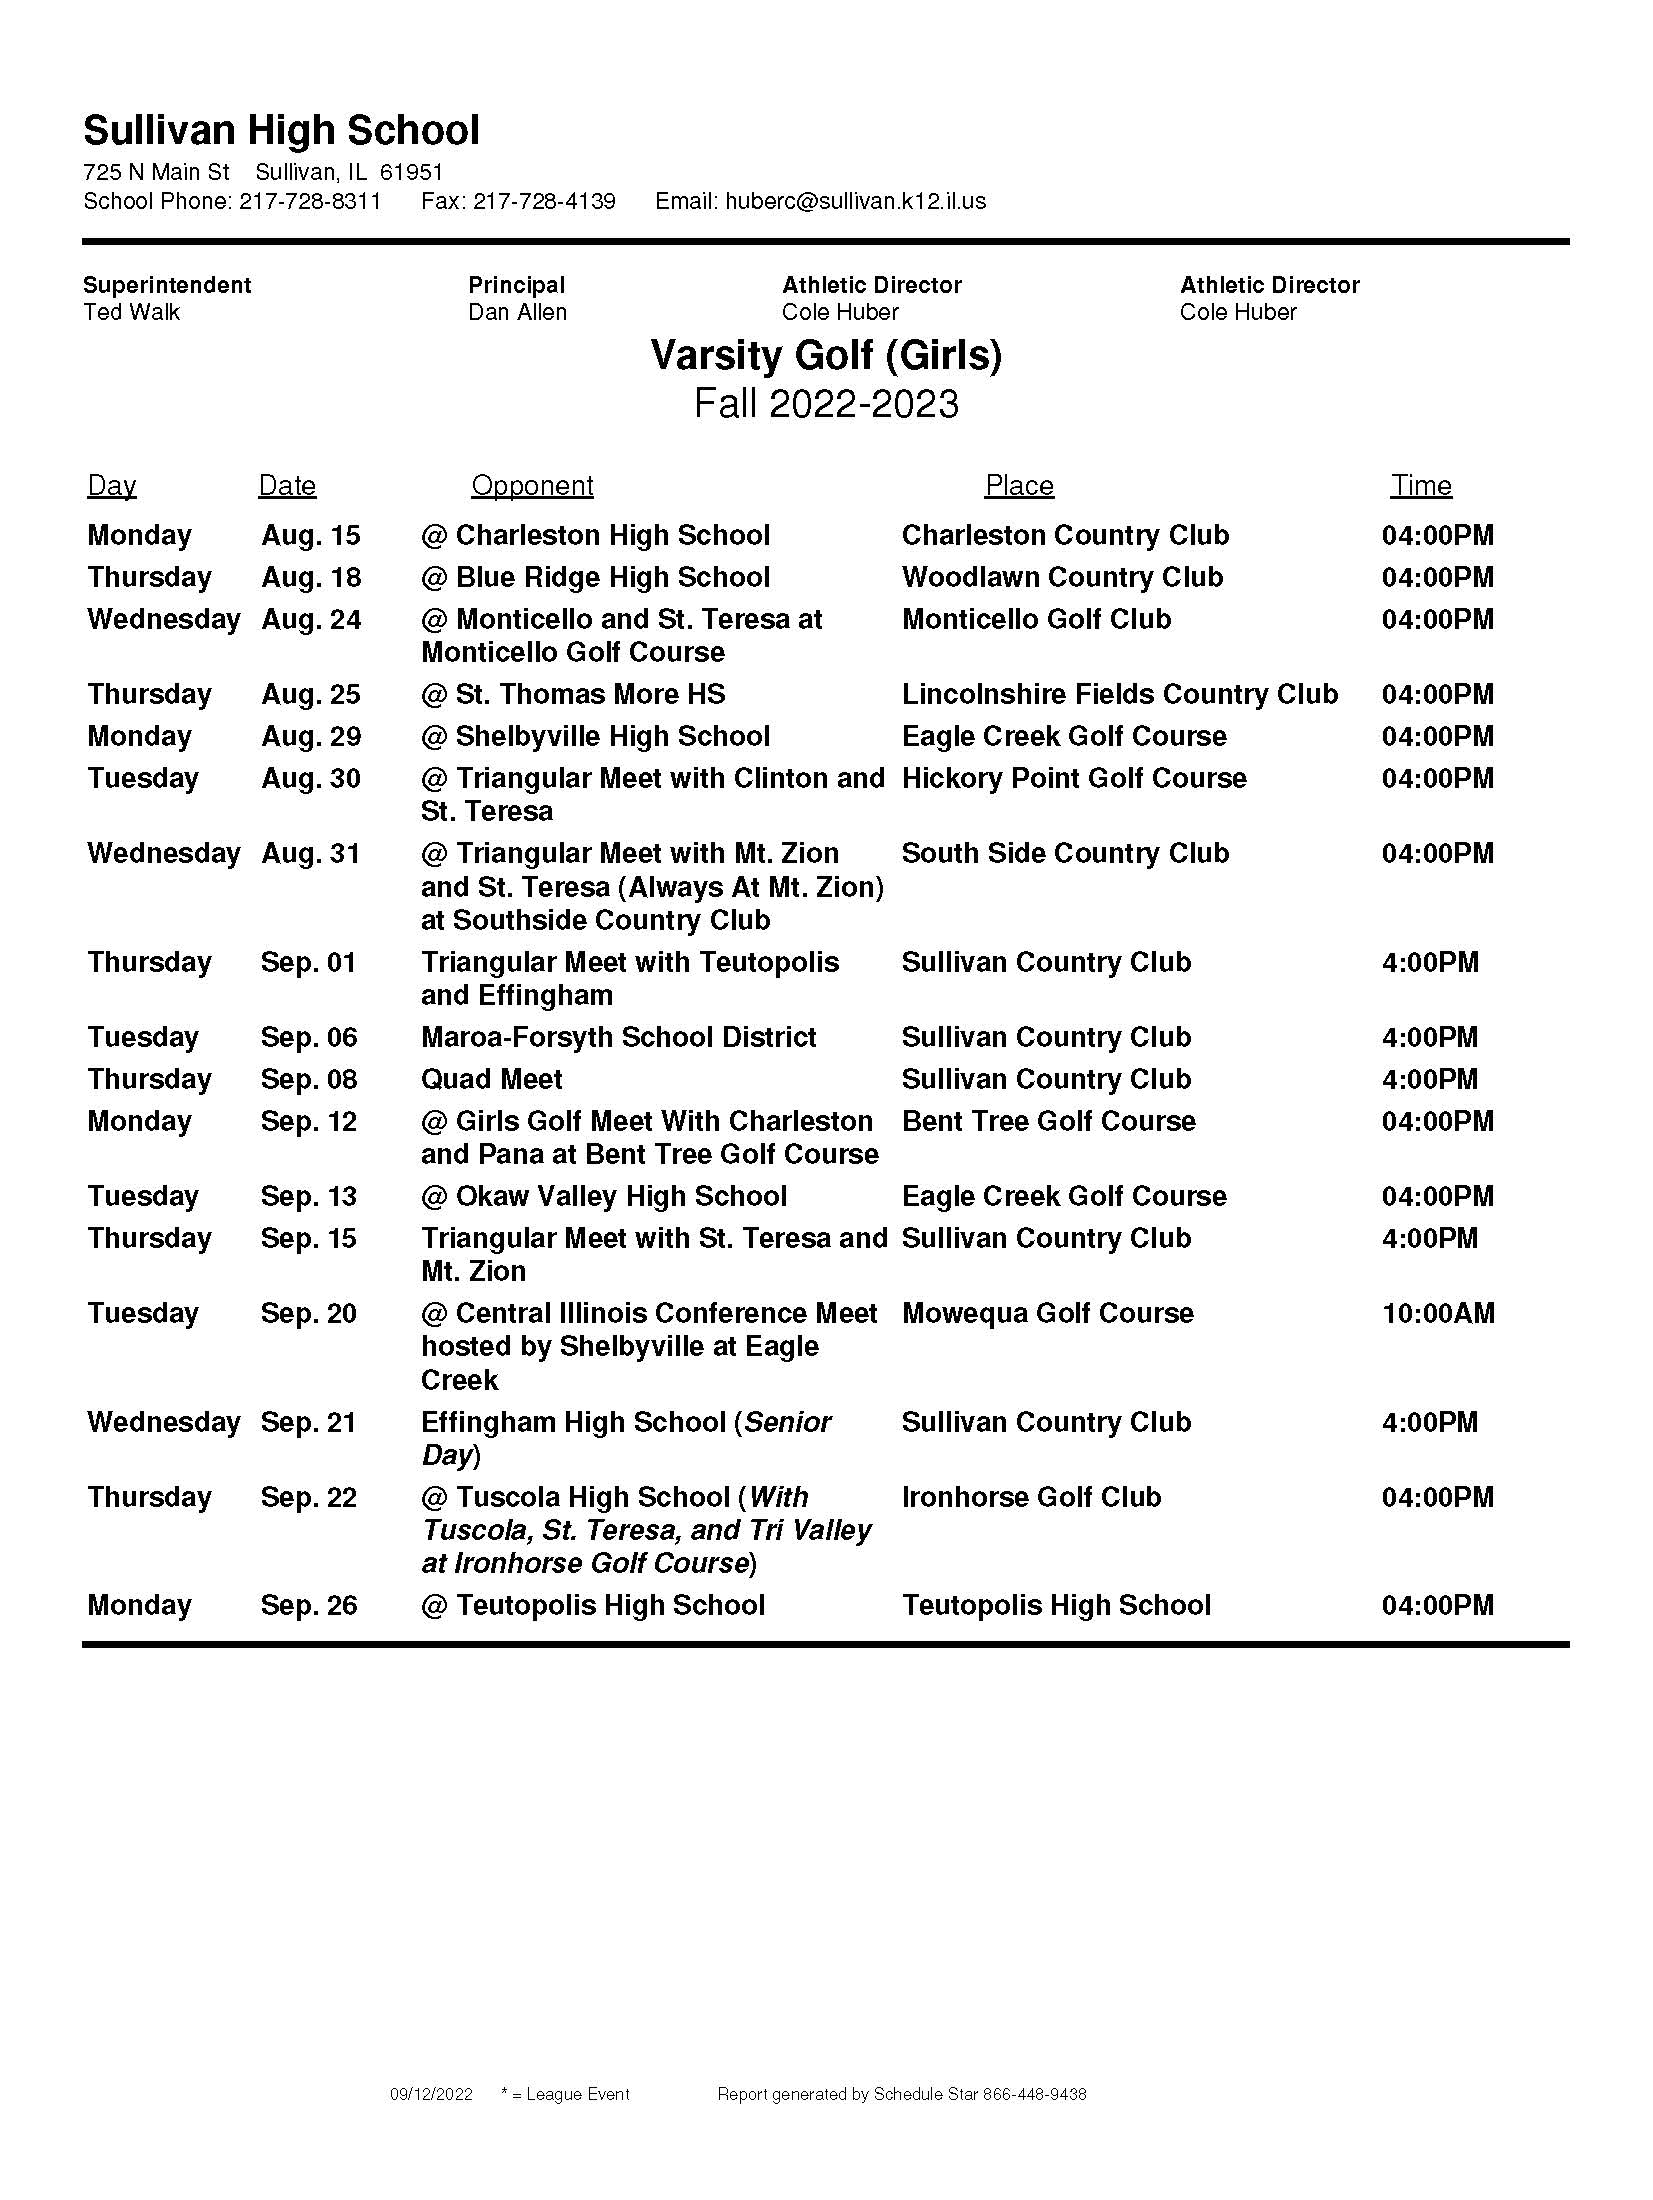 SHS Golf Schedule Girls